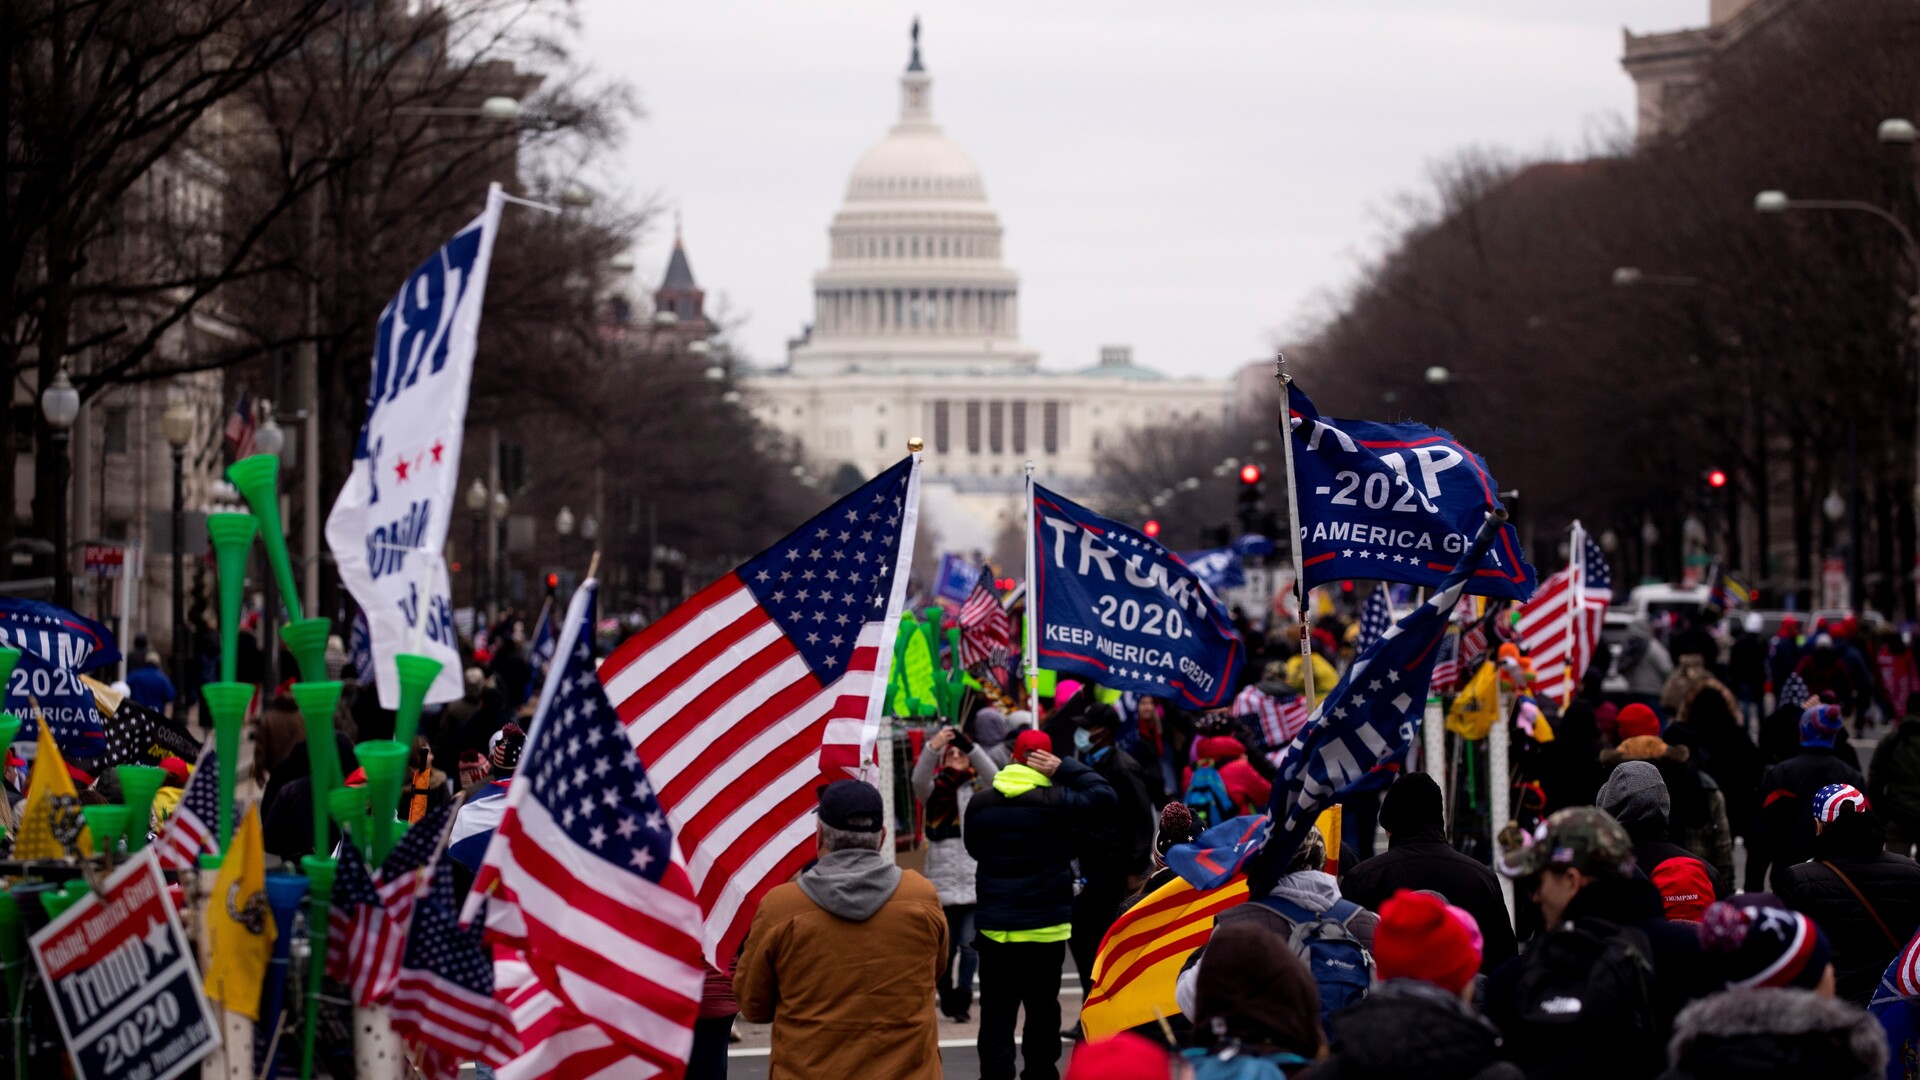 Uffe Gardel om marchen mod Capitol: Trump gik et stykke i Mussolinis fodspor